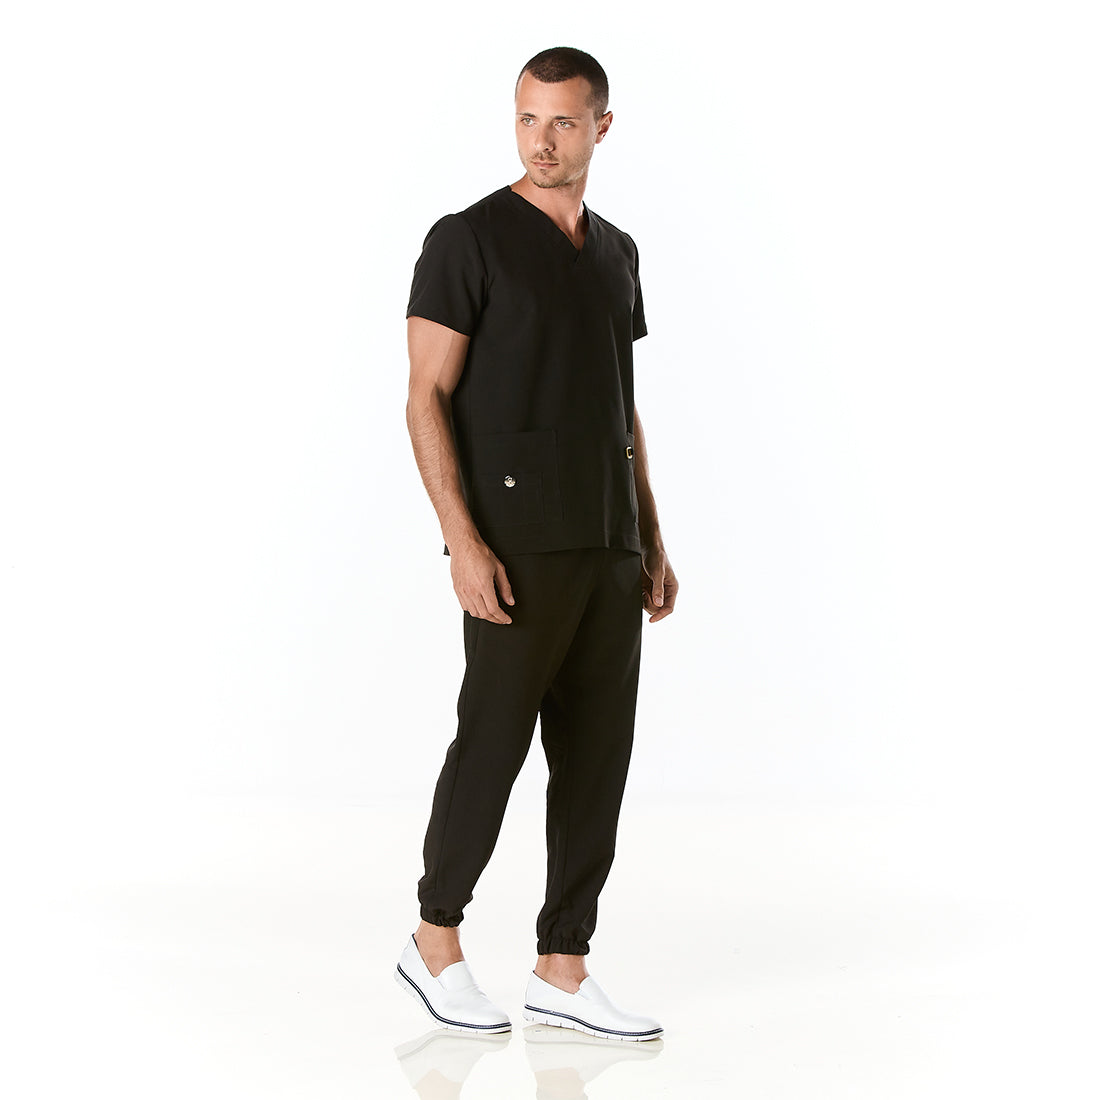 Hombre vistiendo pijama sanitario color negro con cuello en v y pantalon tipo jogger - perfil